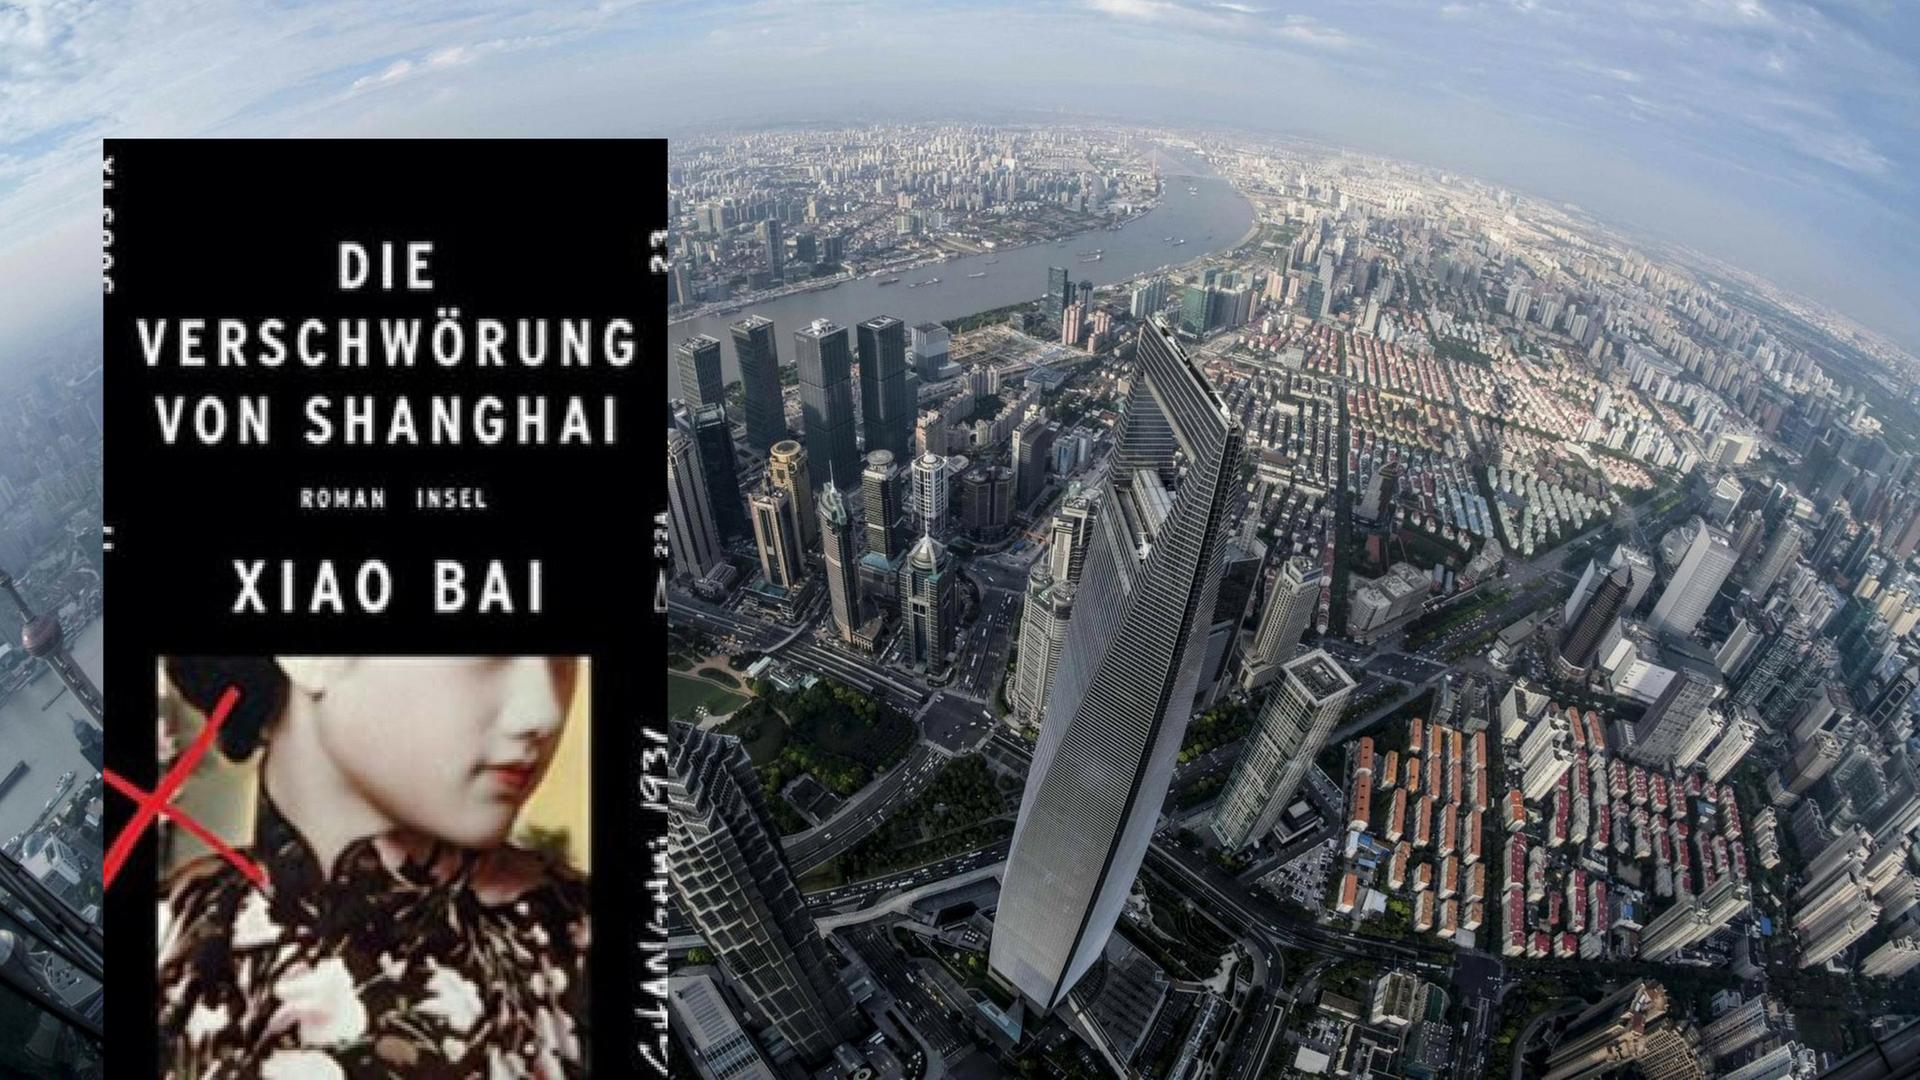 Buchcover: "Xiao Bai: Die Verschwörung von Shanghai"